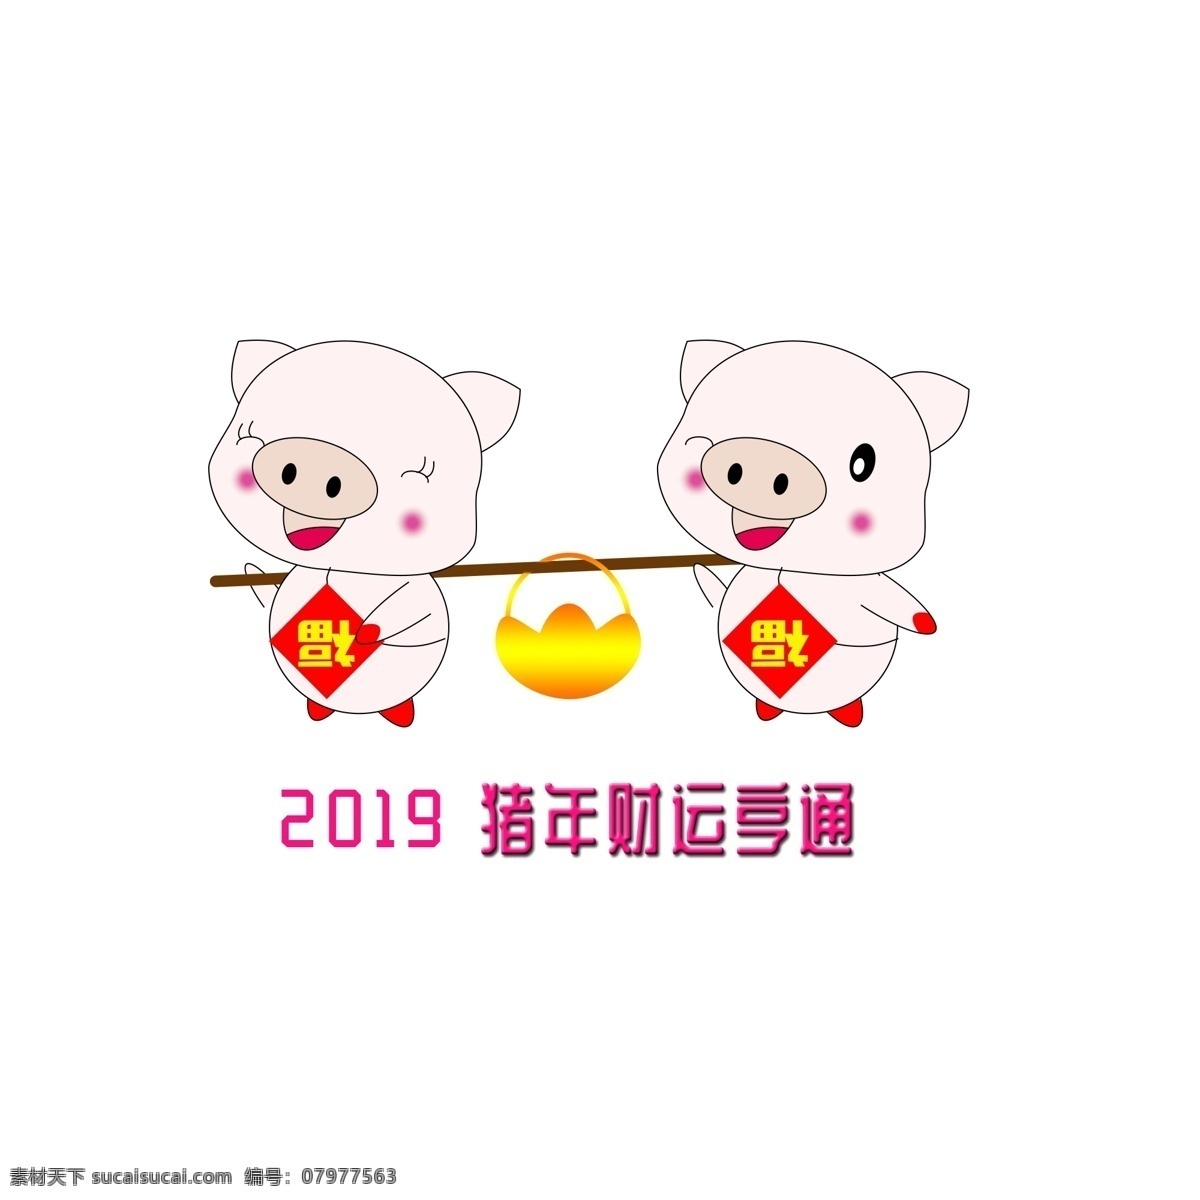 2019 猪年 手绘 可爱 猪 图 祝福 财运亨通 可爱猪 福 金元宝 2019年 猪年祝福